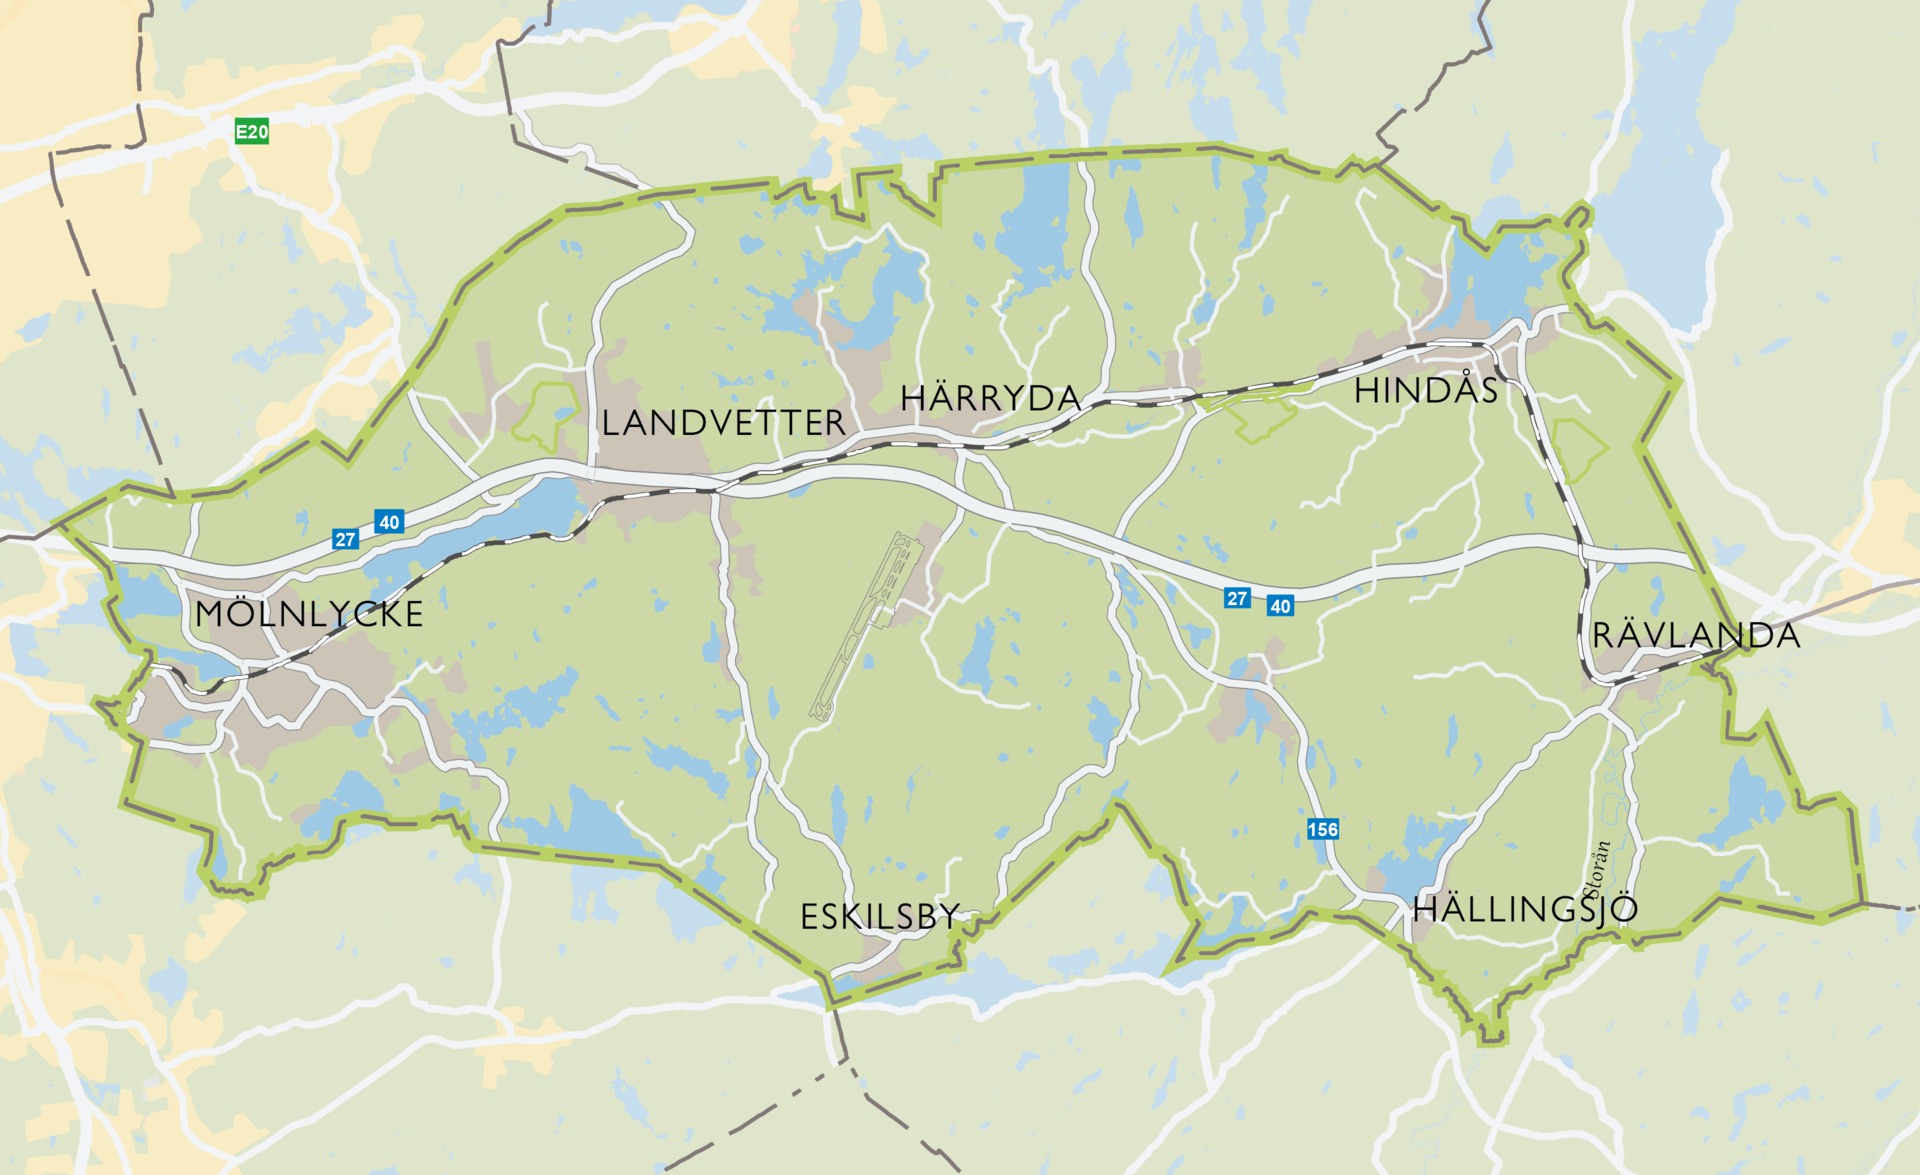 Kartbild över Härryda kommun.